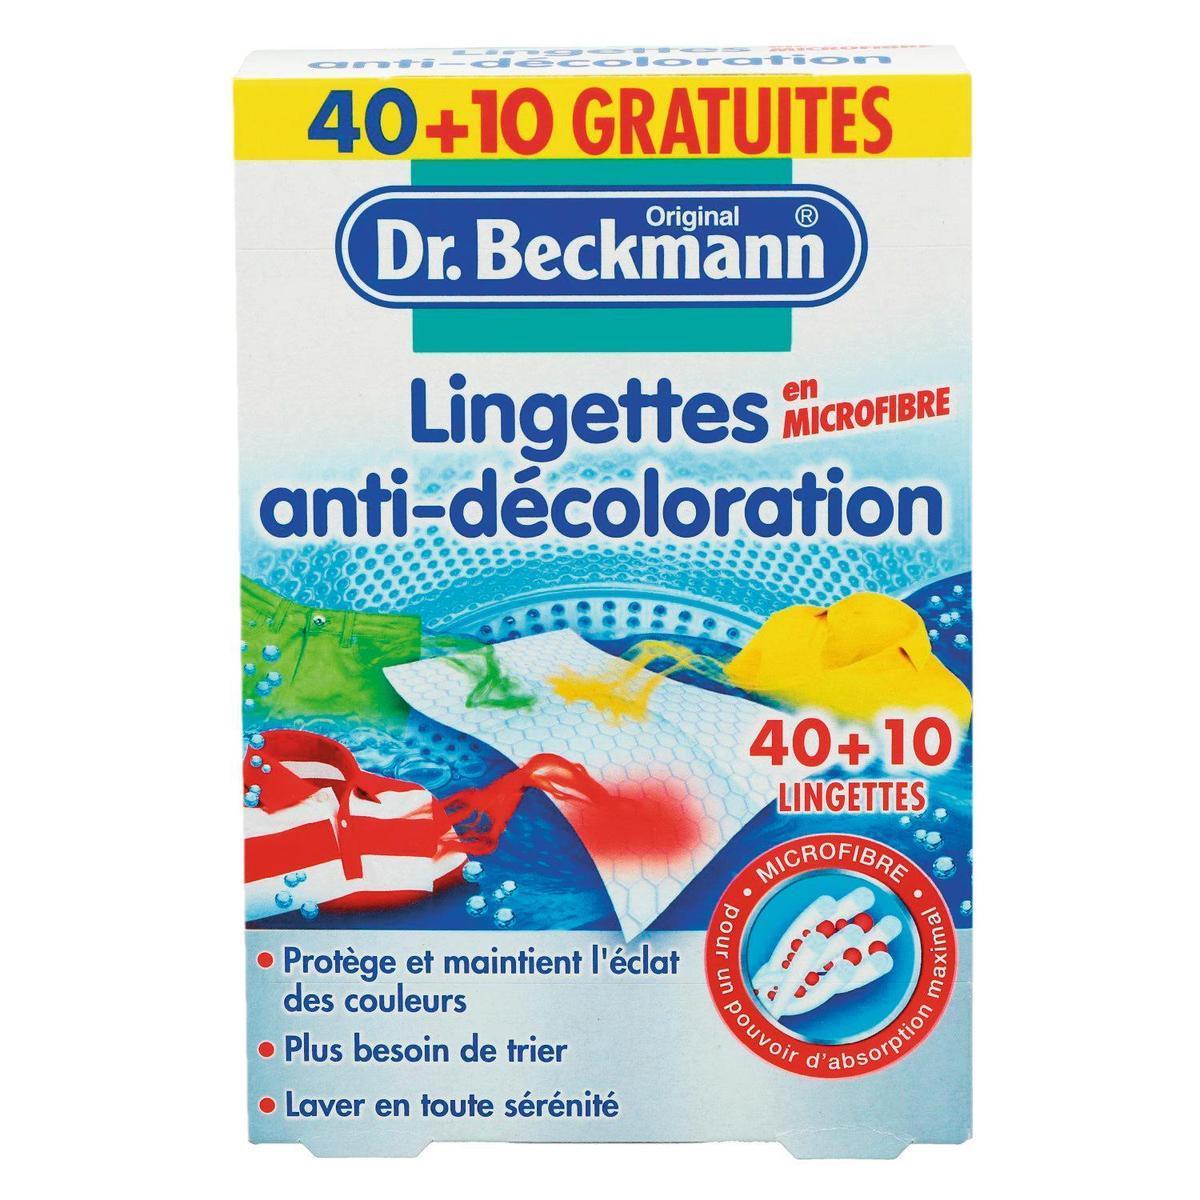 50 Lingettes anti-décoloration Dr Beckmann